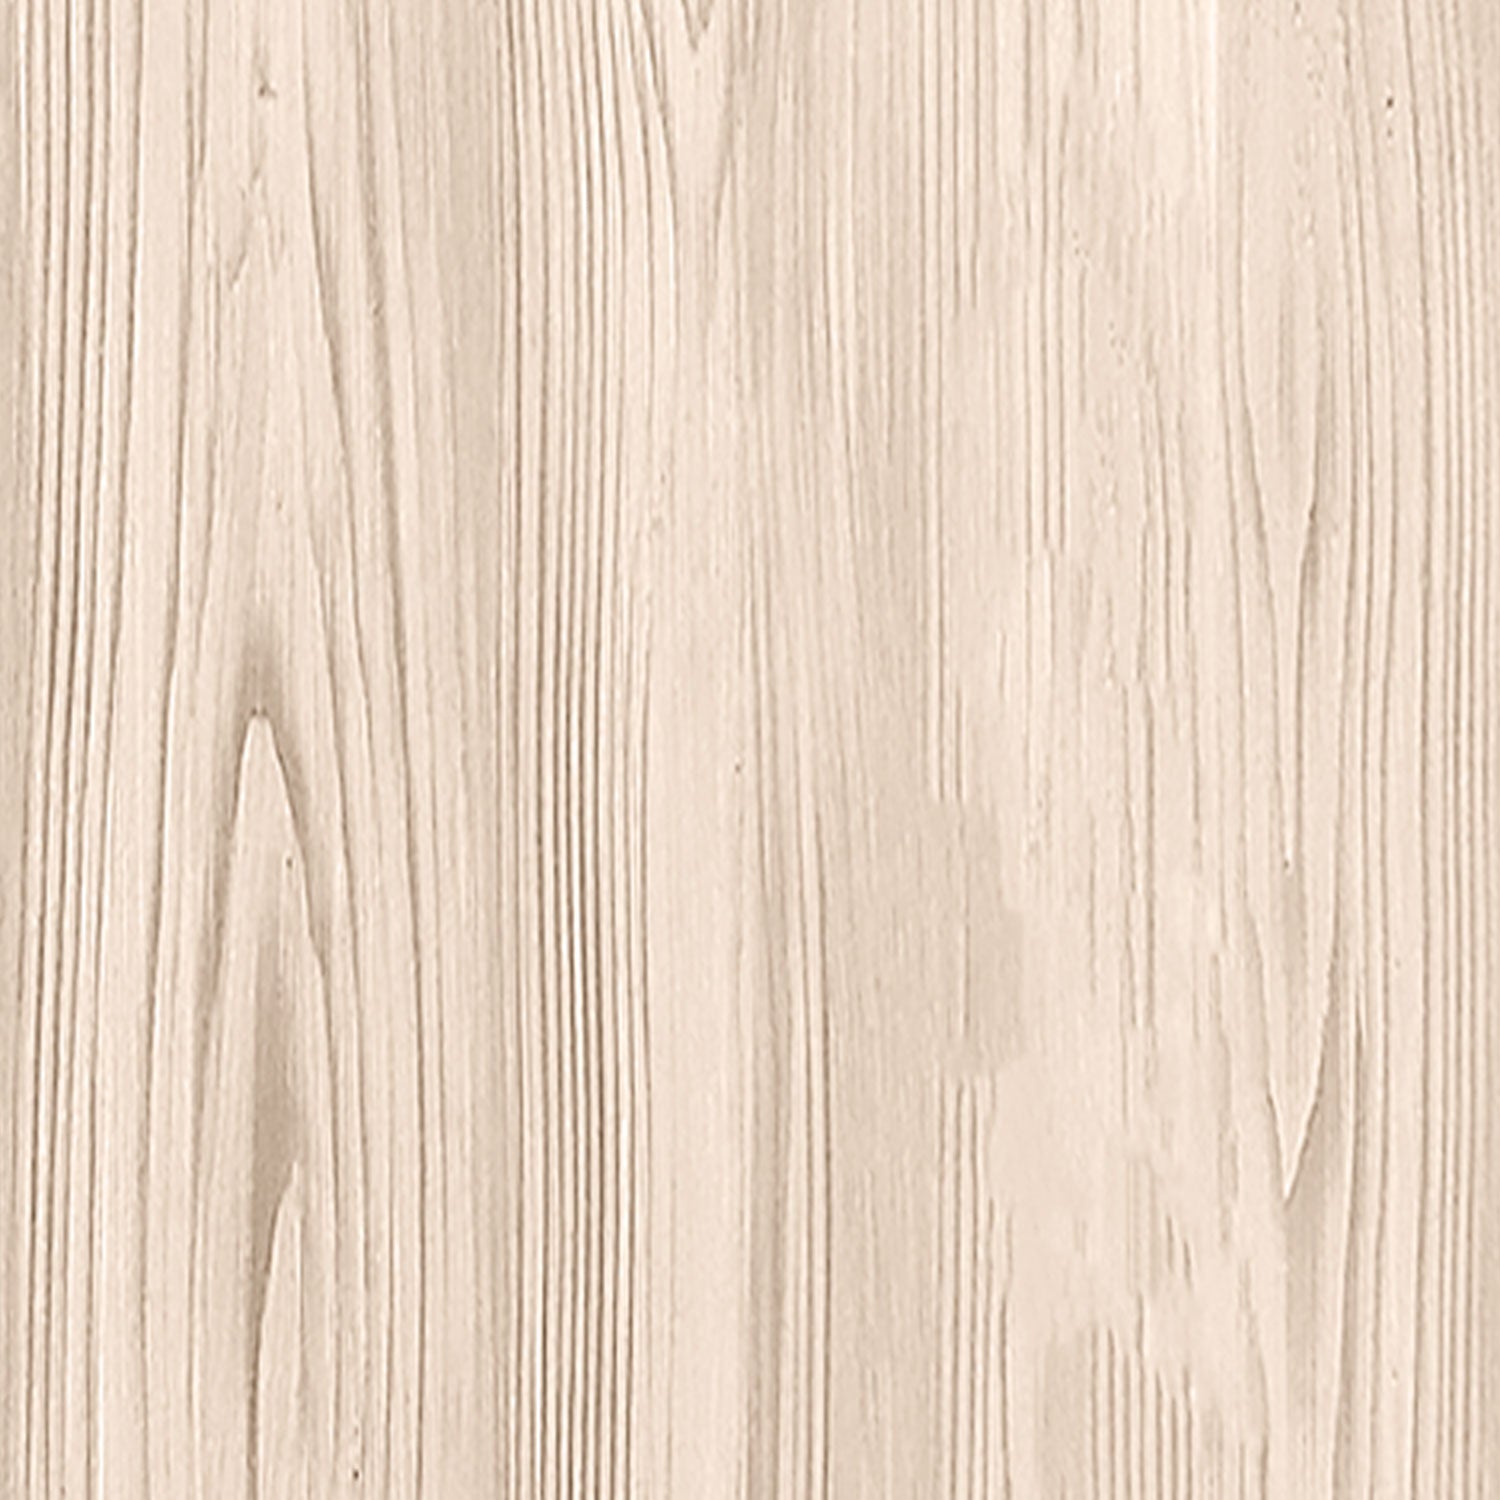 Multi-purpose Wood'n Kit (Med) - White Oak